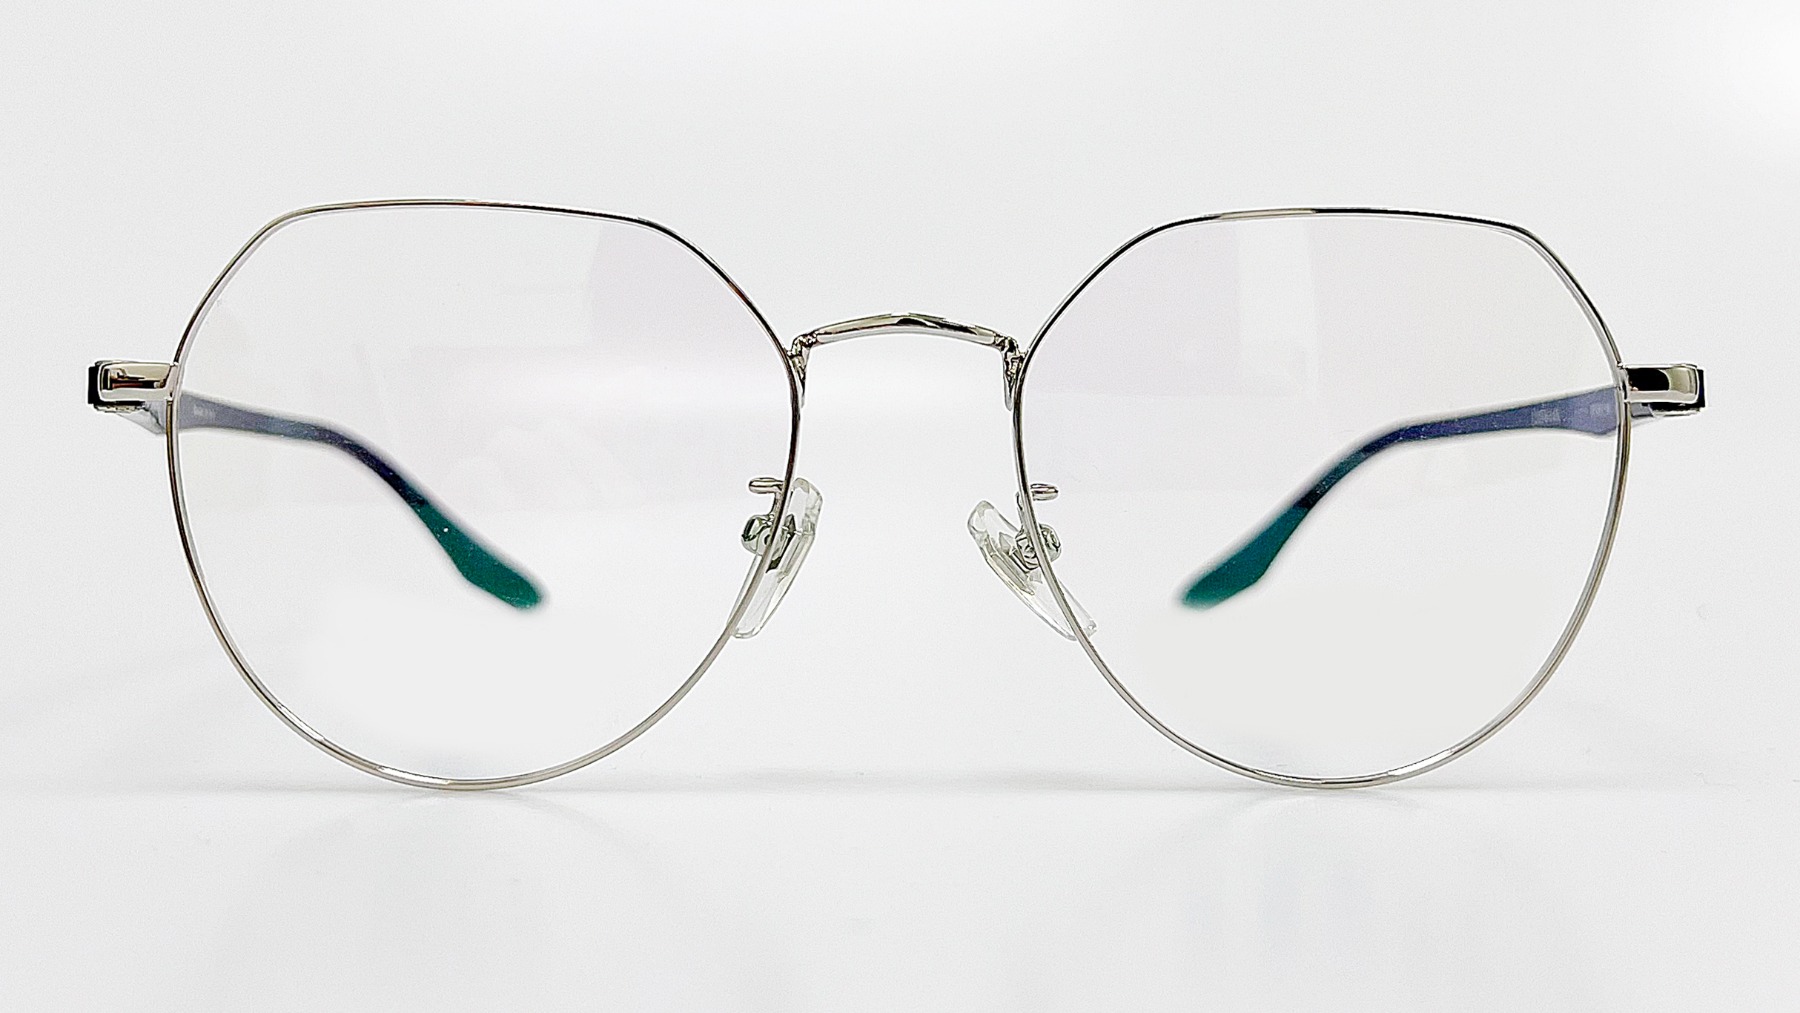 HORIEN_HN8158, Korean glasses, sunglasses, eyeglasses, glasses